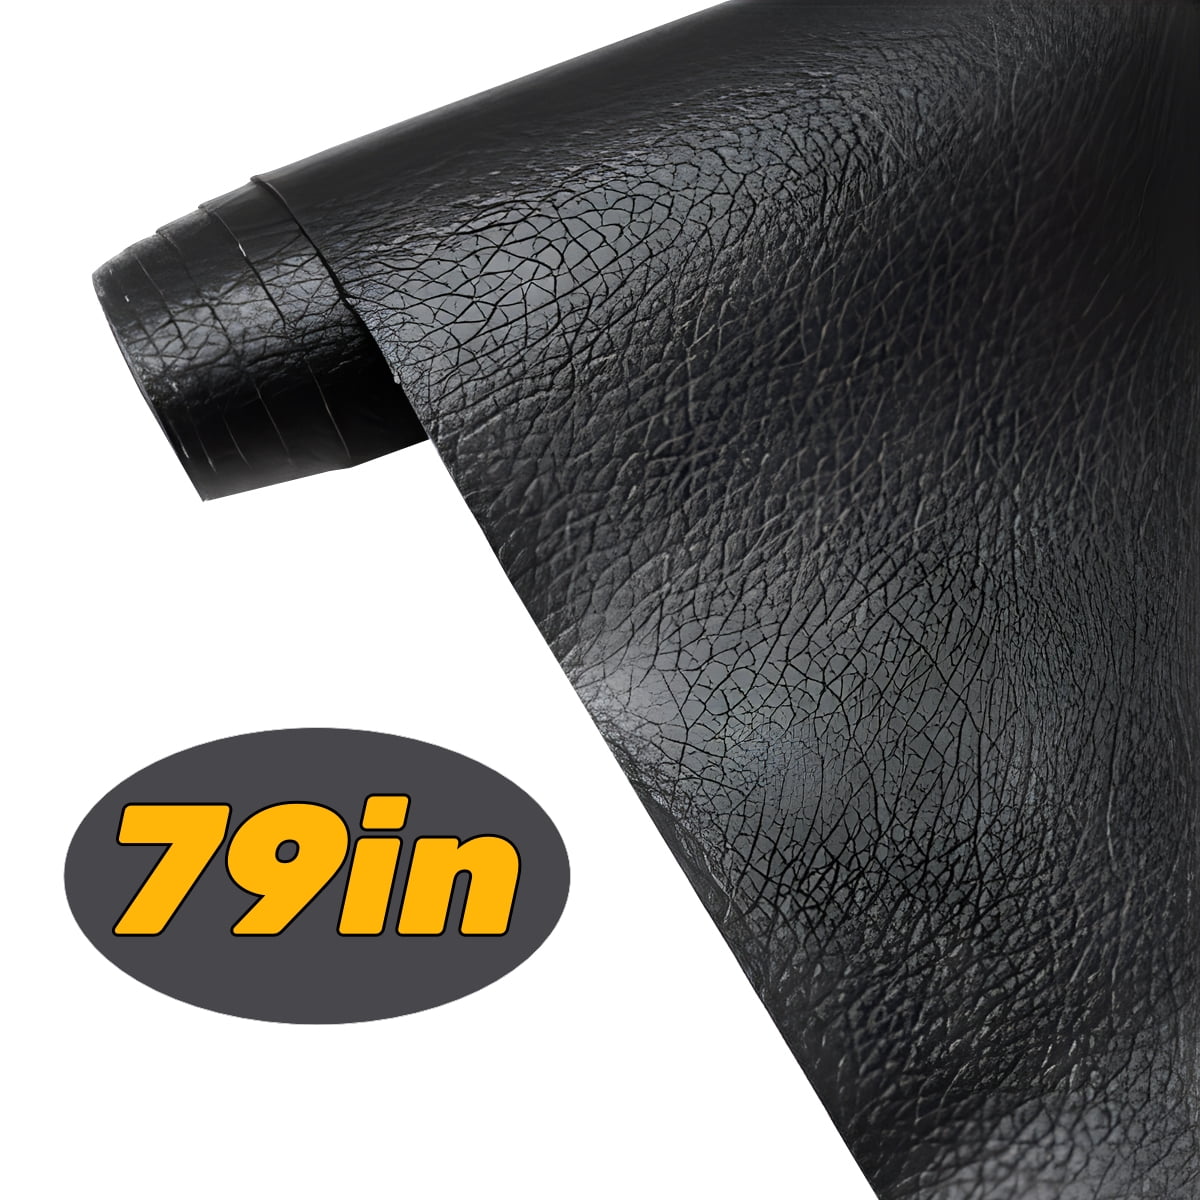 MastaPlasta Original Self-Adhesive Leather Repair Tape - Black 60 x 4  (150 x 10 cm). Instant